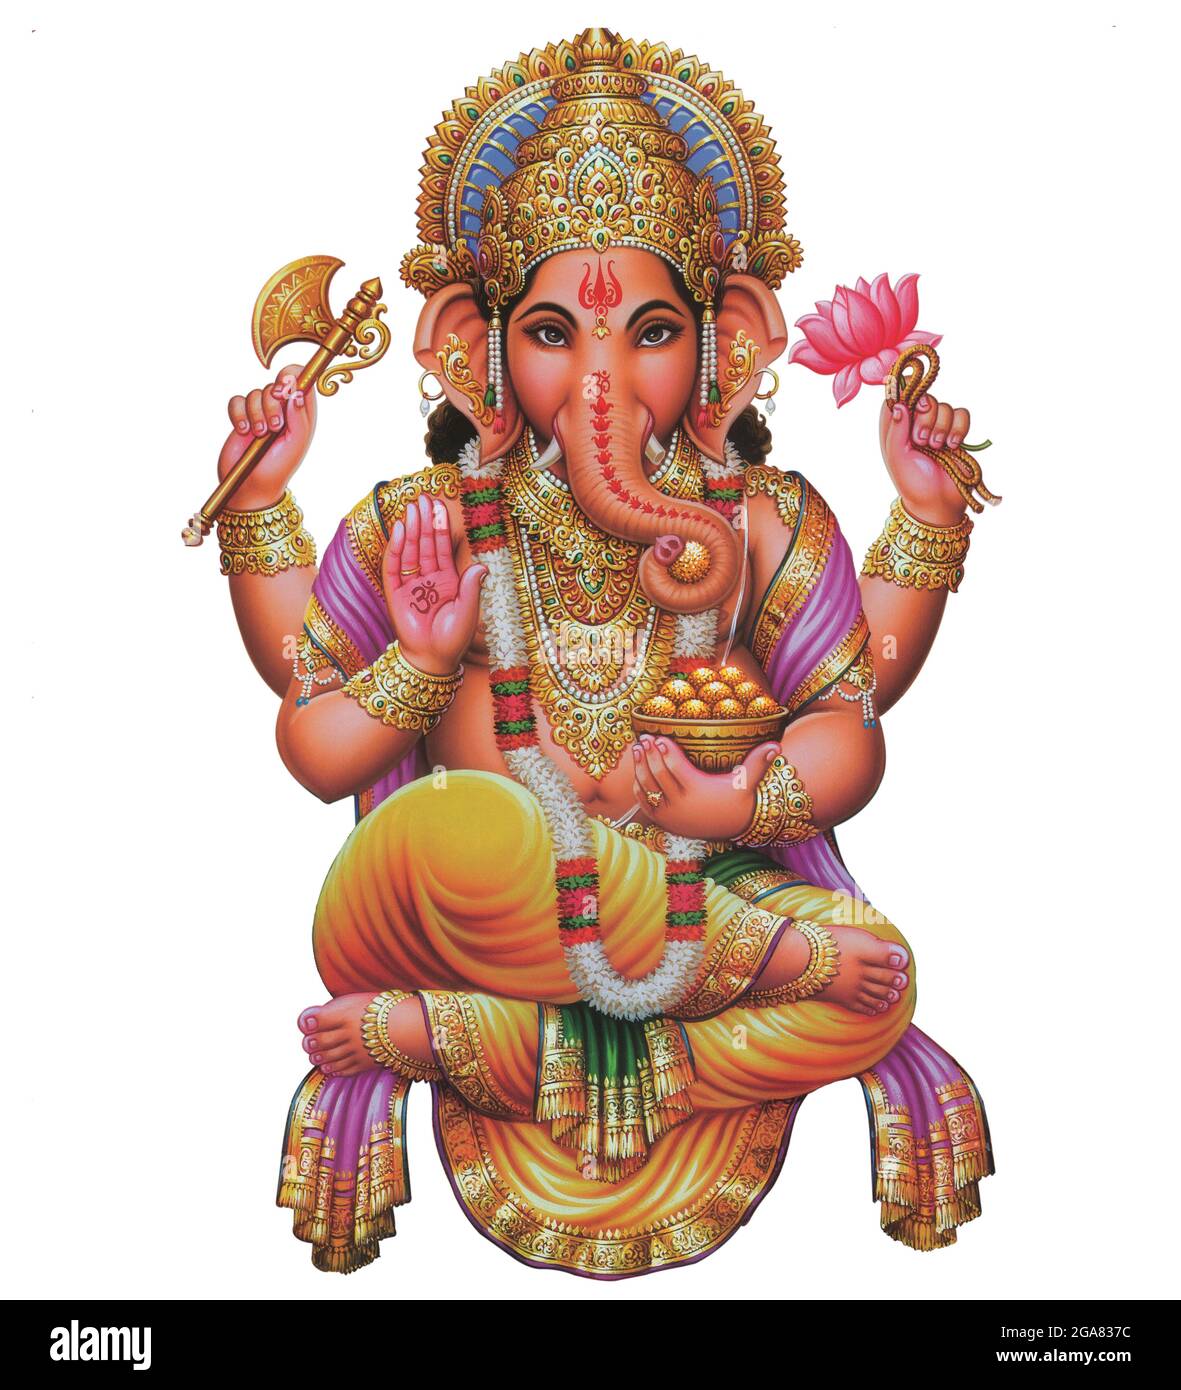 Indian God Ganesha, Indian Lord Ganesh, Indian Mythological Image of ...